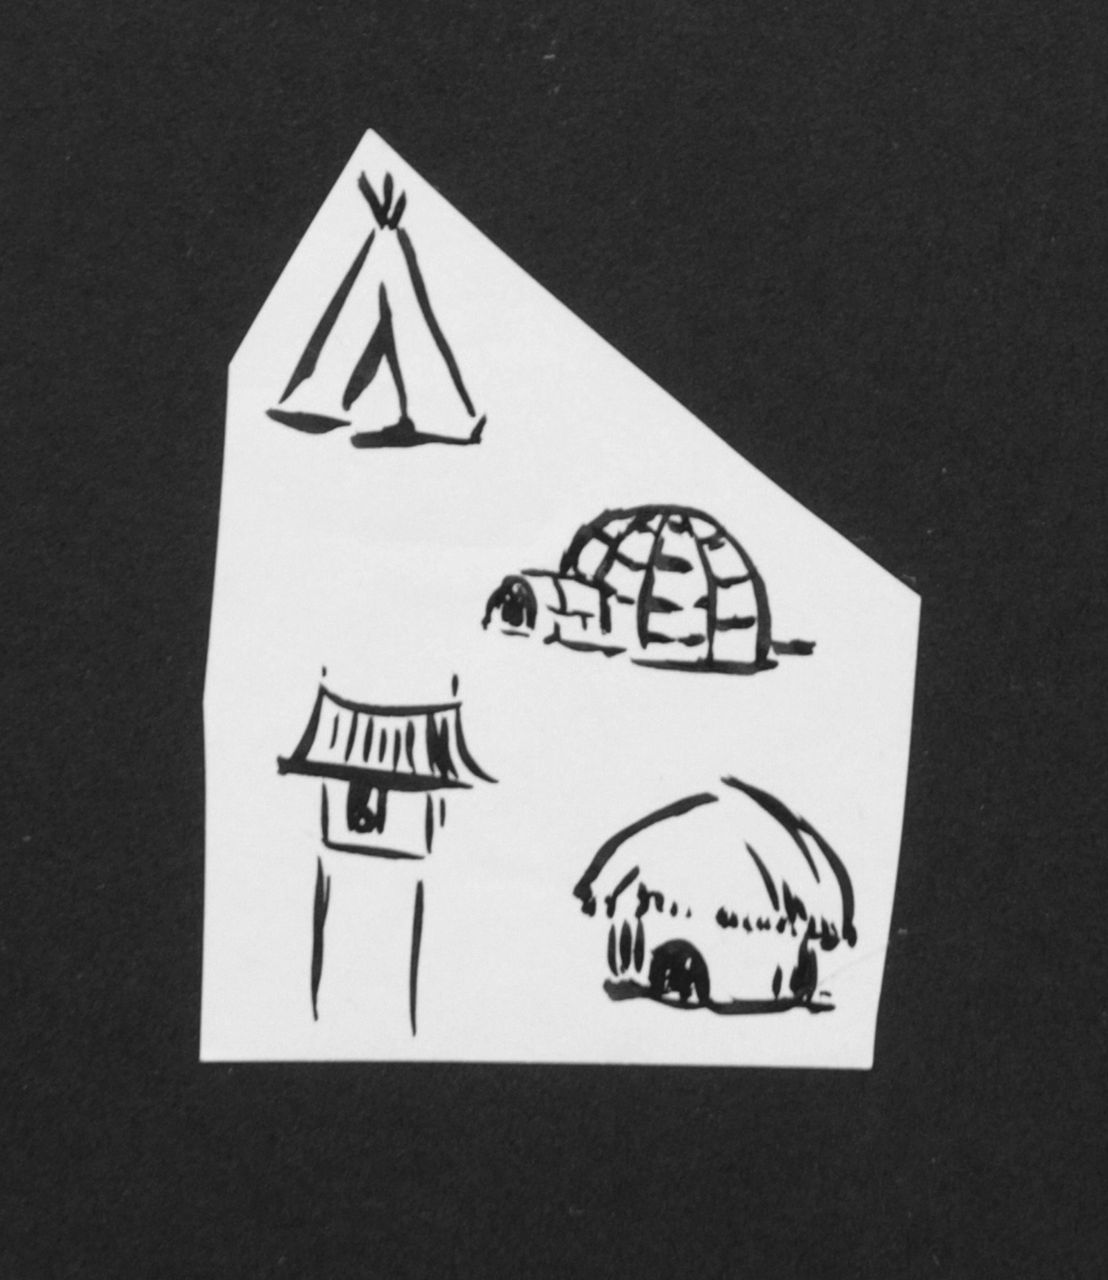 Oranje-Nassau (Prinses Beatrix) B.W.A. van | Beatrix Wilhelmina Armgard van Oranje-Nassau (Prinses Beatrix), Four huts, Bleistift und Ausziehtusche auf Papier 7,9 x 6,0 cm, executed August 1960